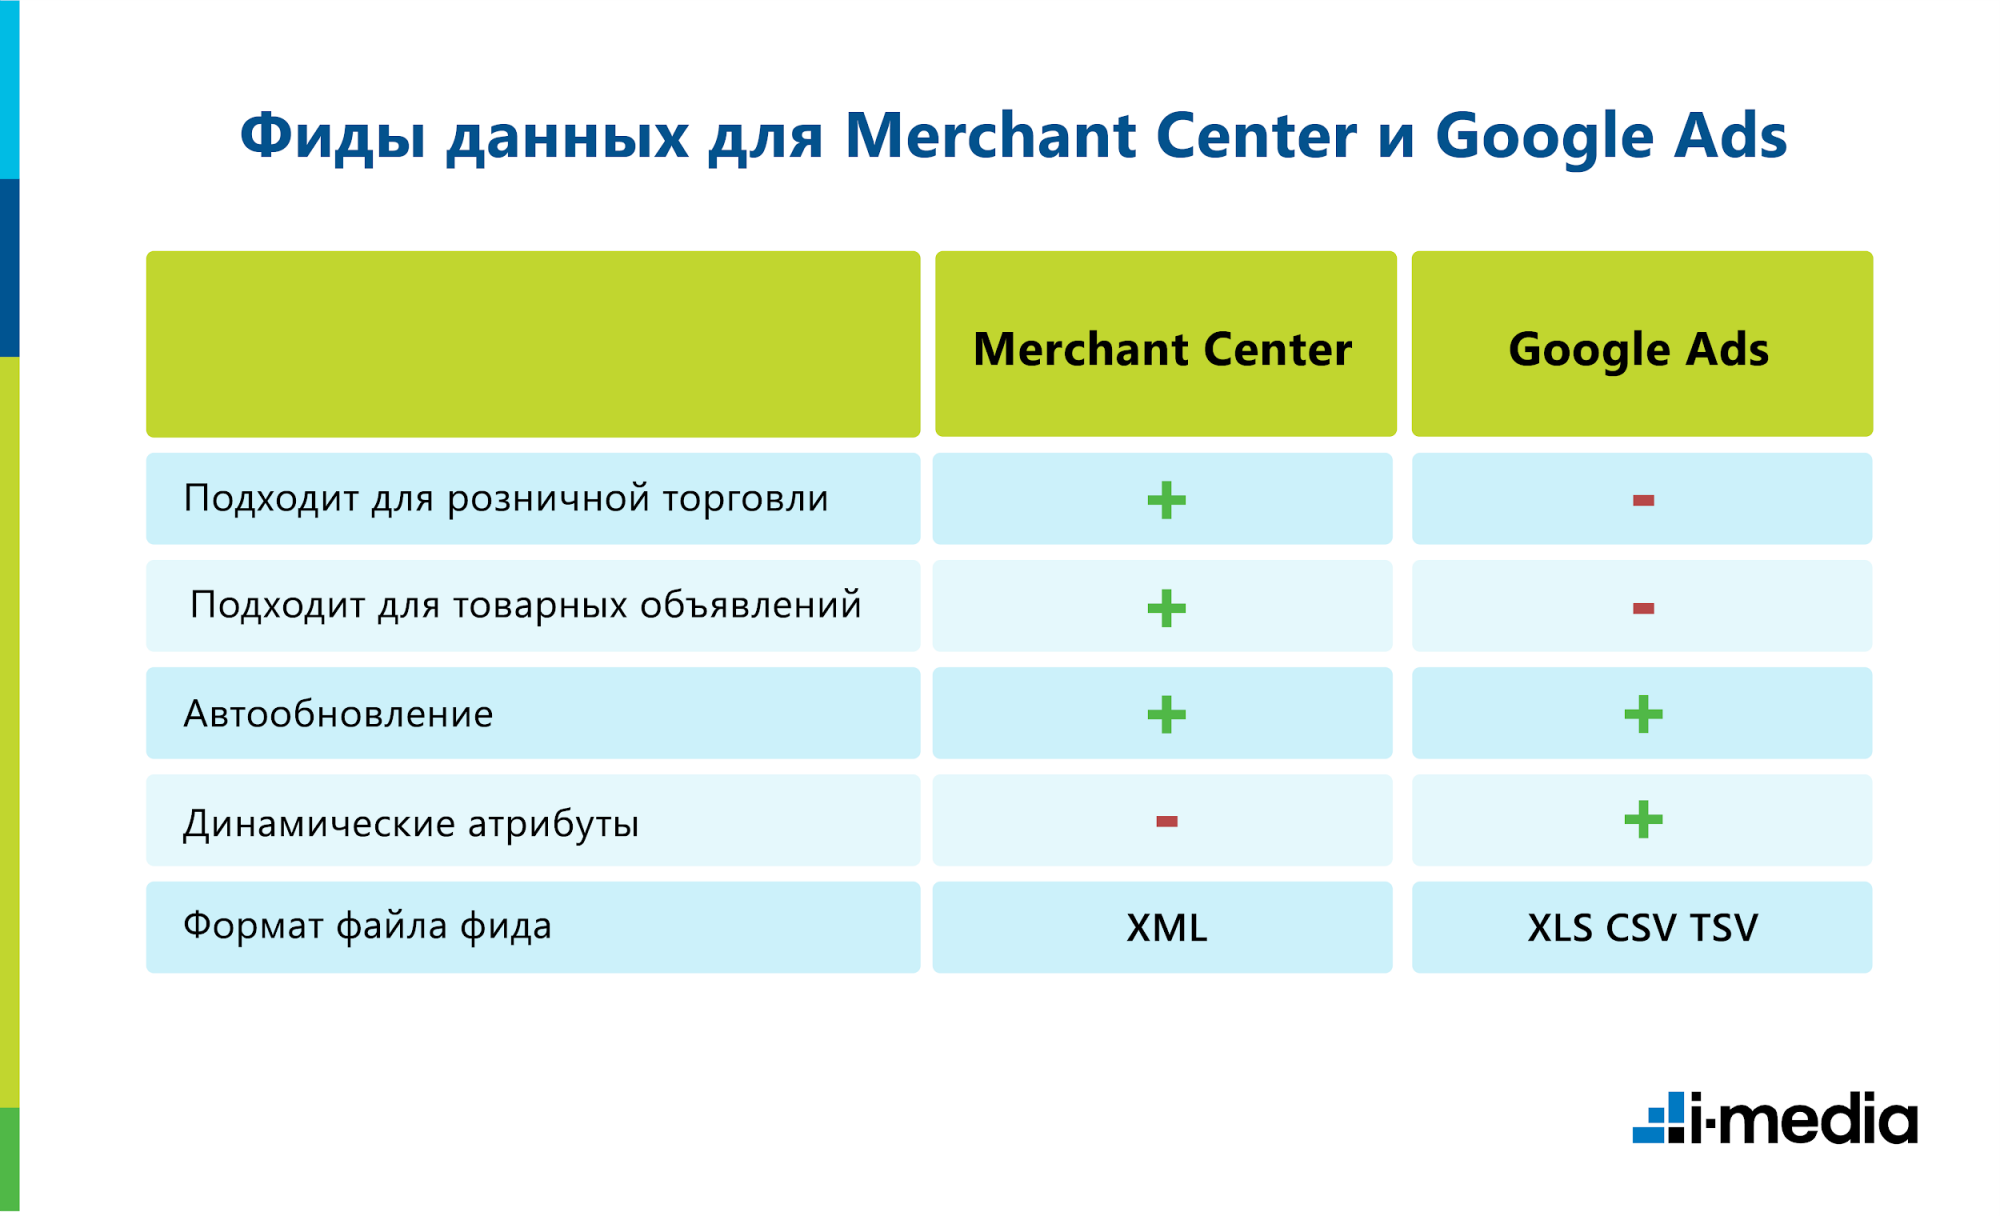 Фиды данных для Merchant Center и Google Ads